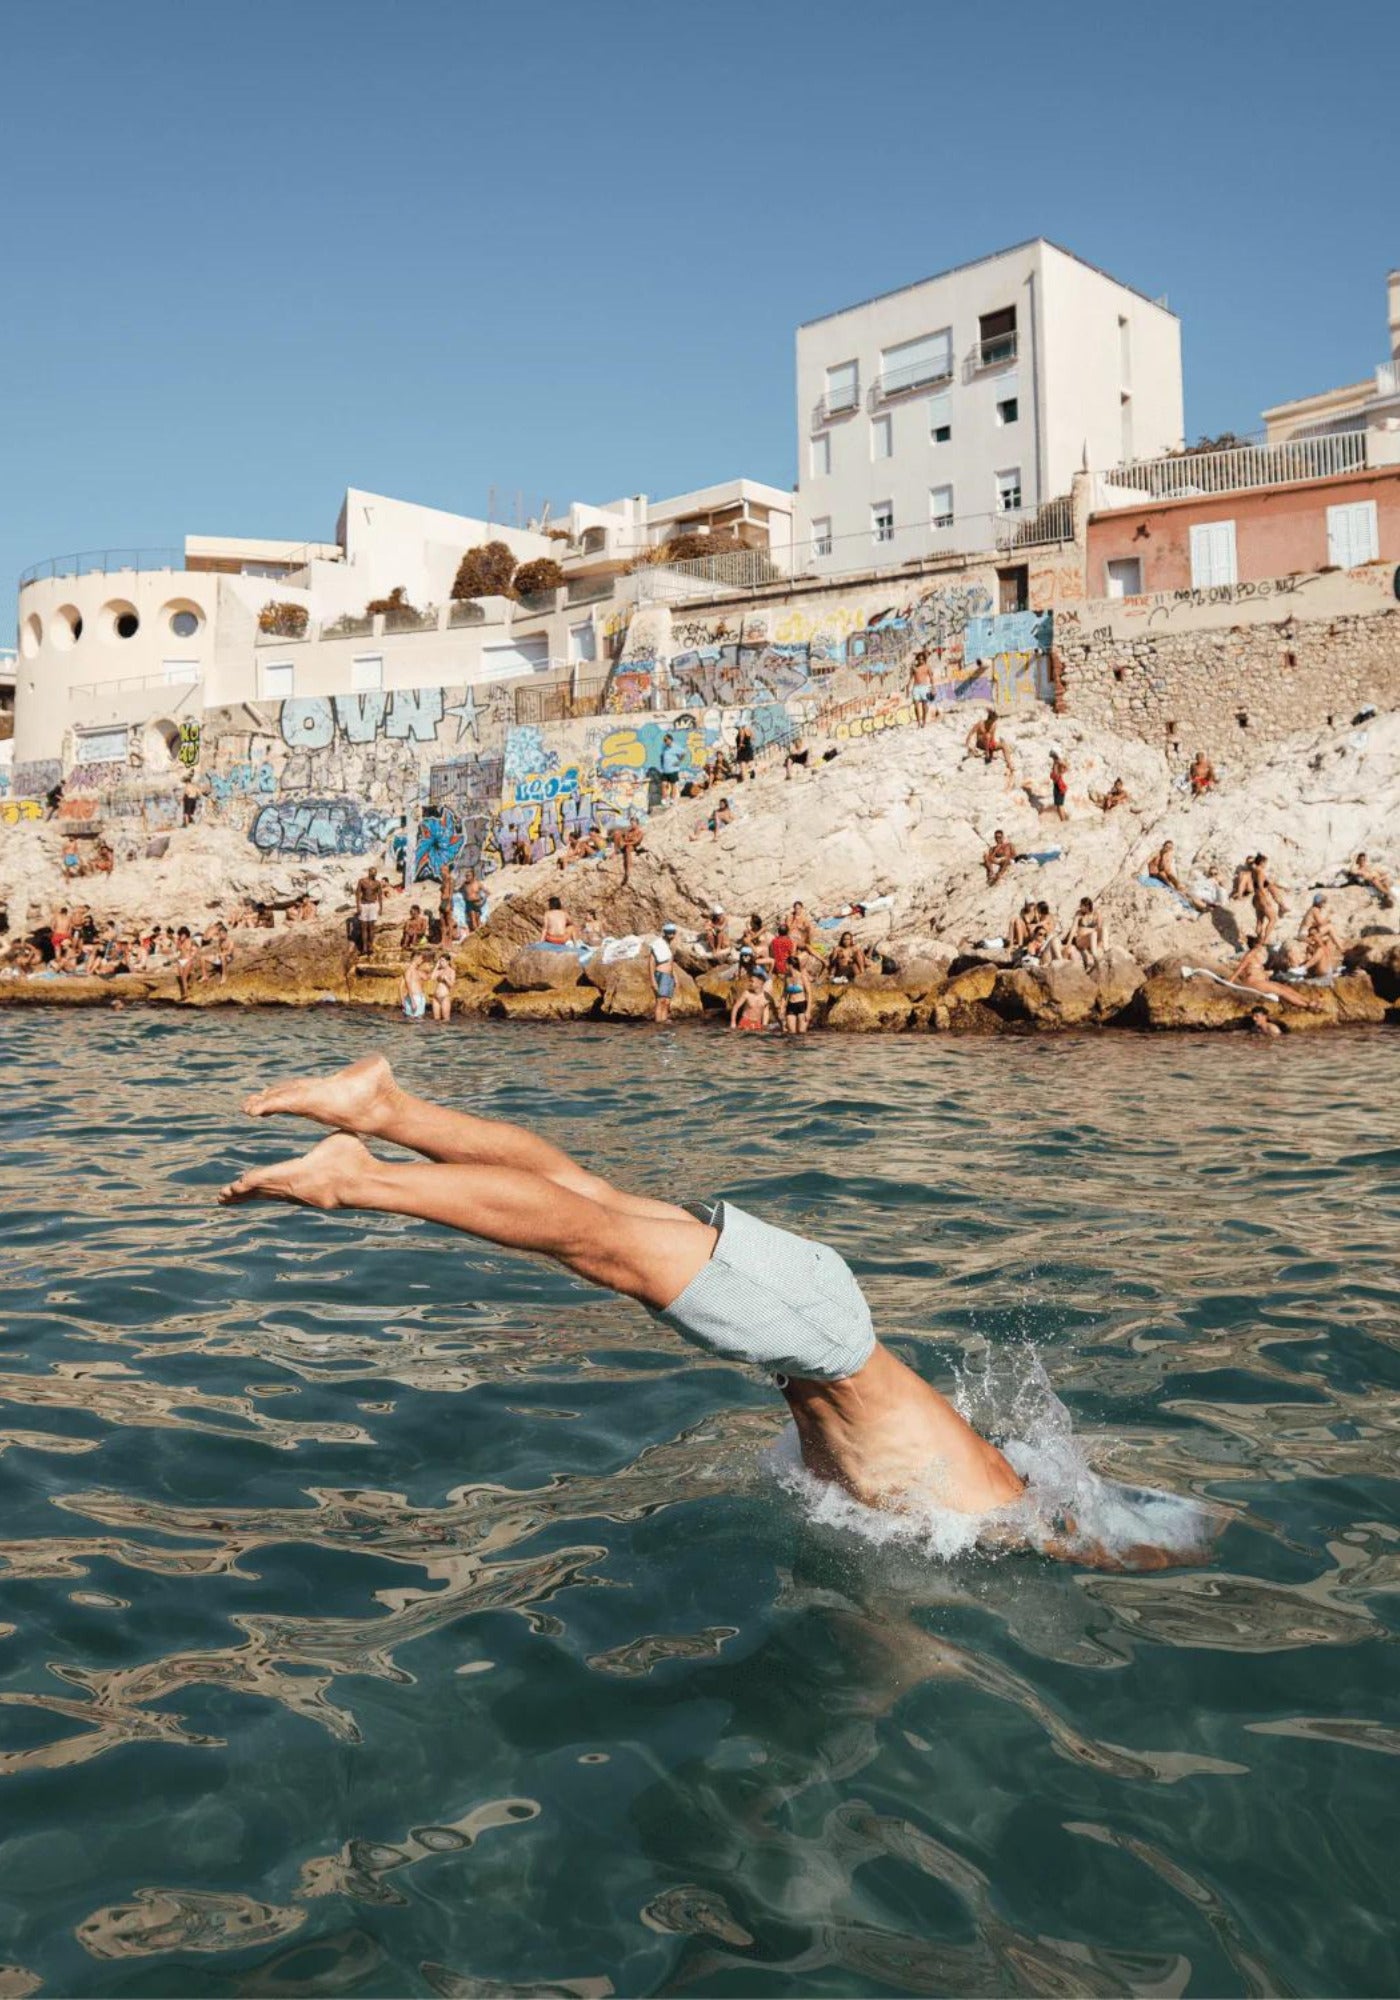 L'homme plonge dans la mer et porte le short de bain Napoli de chez Calanque